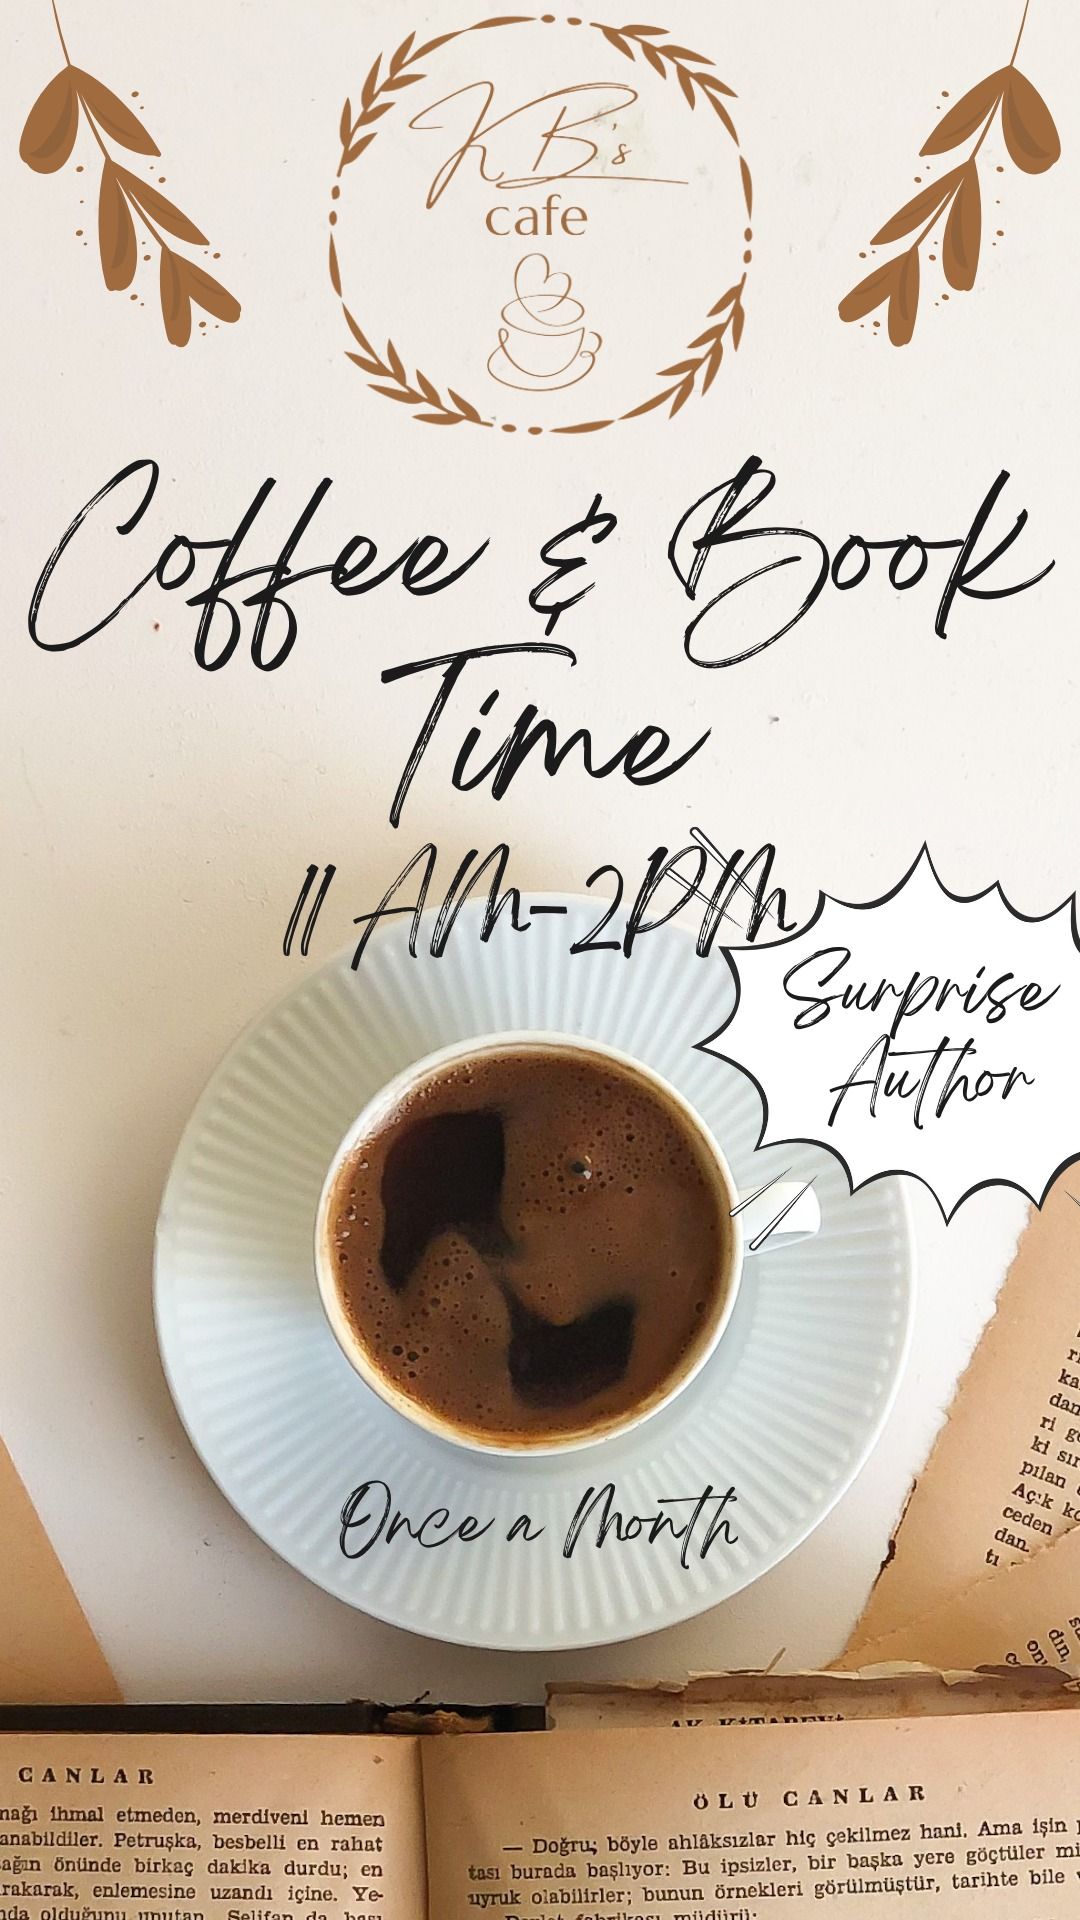 Coffee & Book Time